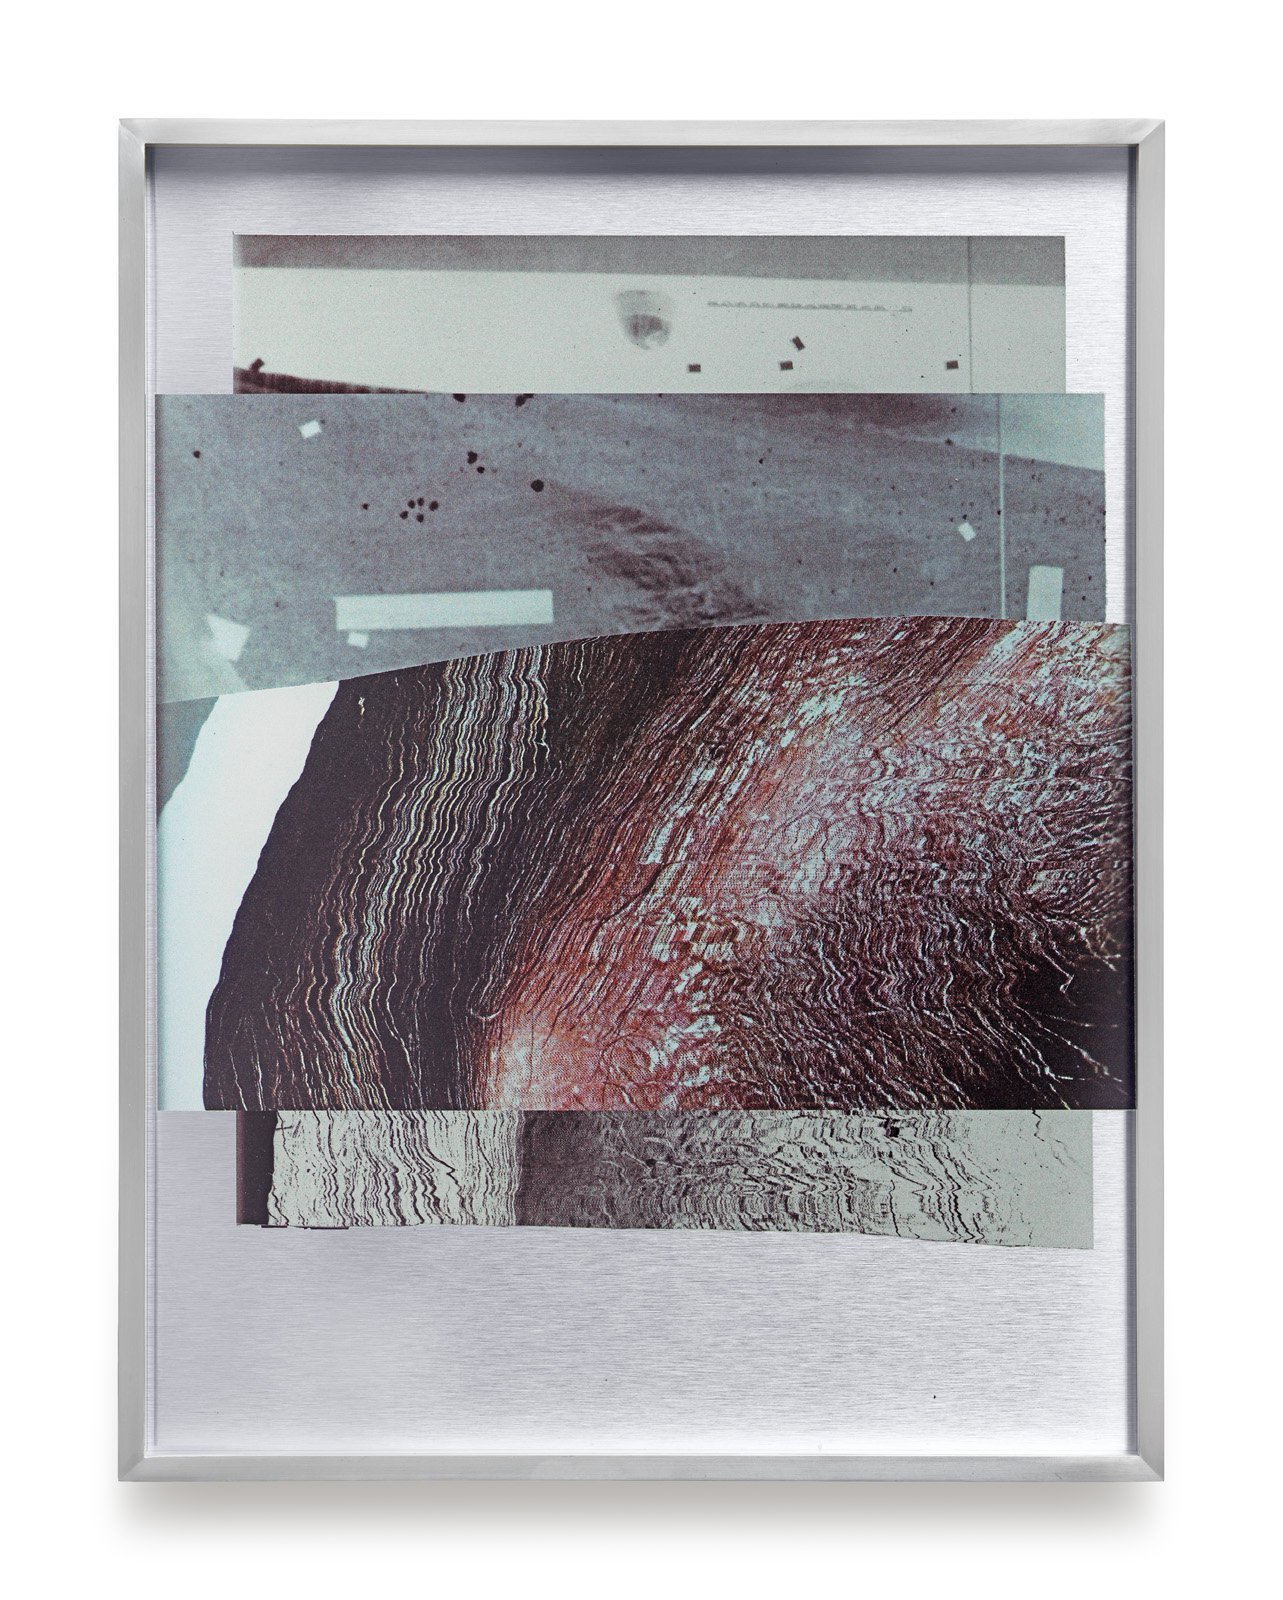 James Richards, Rushes Minotaur 4, inkjet prints on dibond aluminium, 51 x 39 x 4 cm (framed), 2017